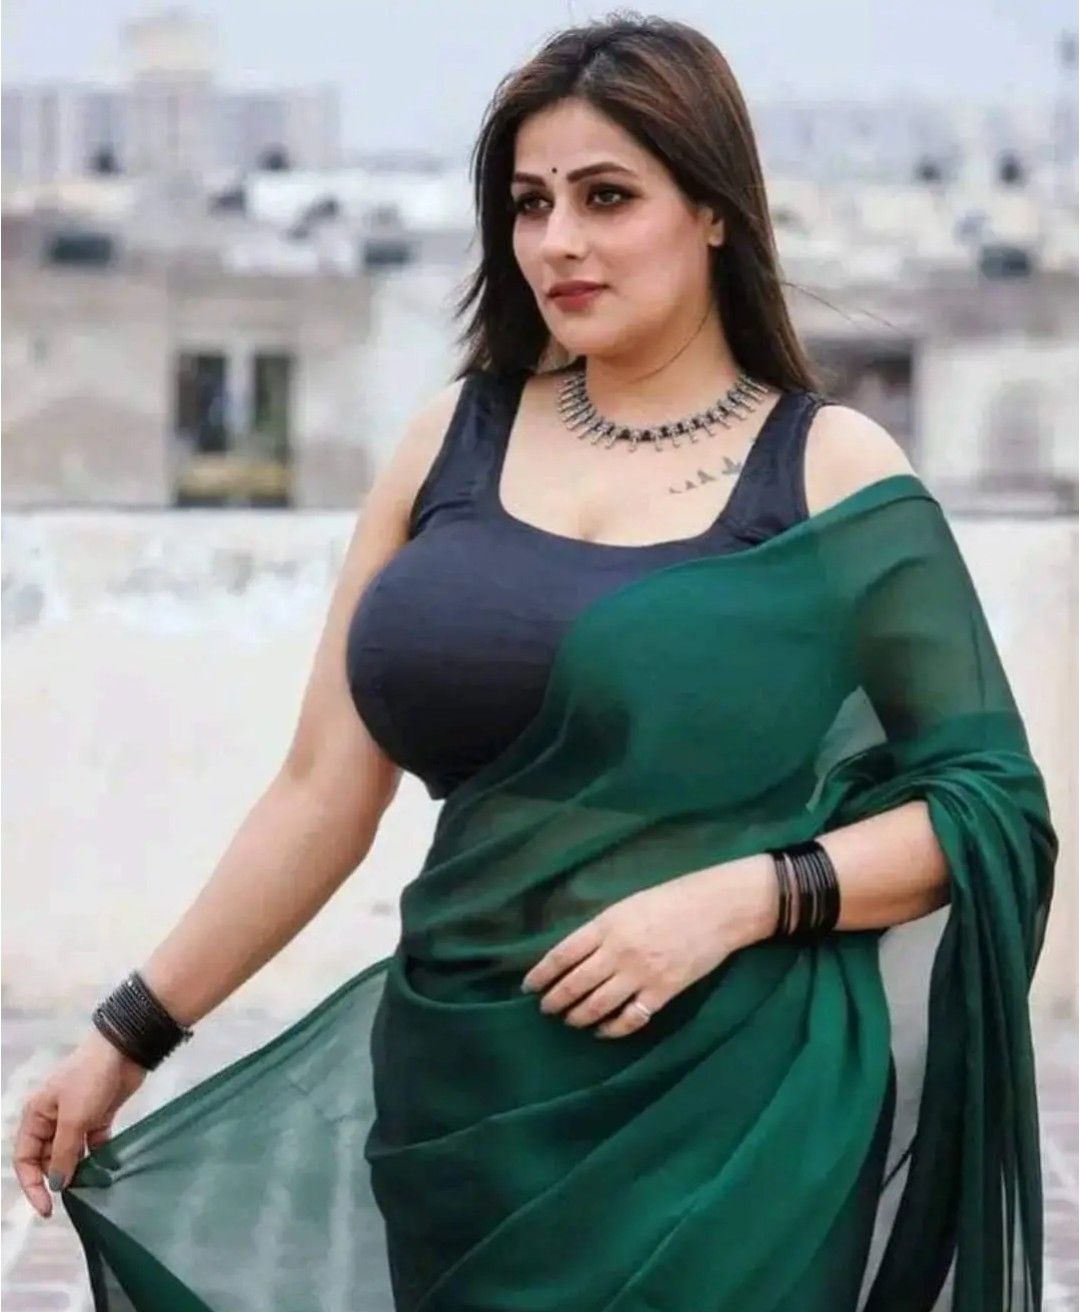 Green  saree Lover| Saree Lover|Sexy Saree |Sexy Bhabhi |Bhabhi Lover's |Bhabhi